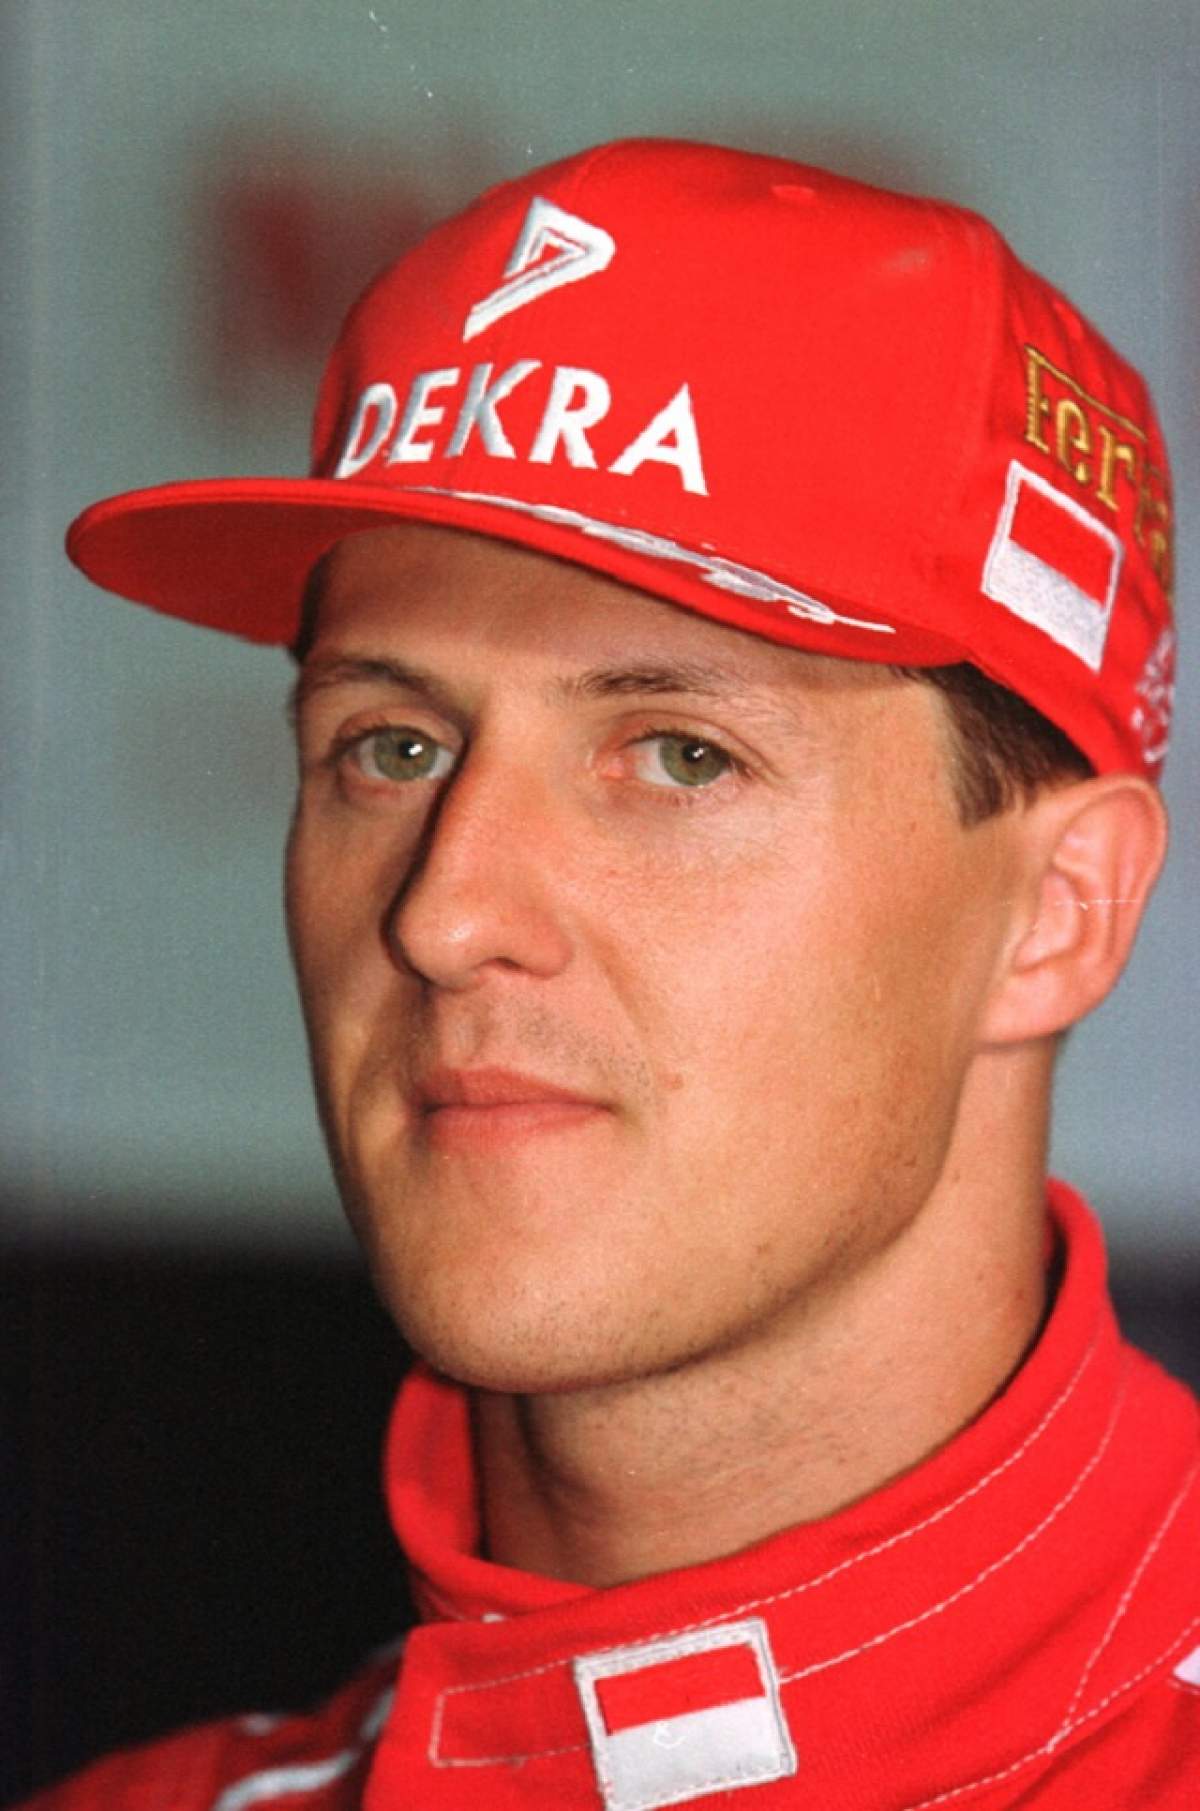 Medicul lui Michael Schumacher a vorbit despre starea de sănătate a pilotului şi şansele acestuia de recuperare